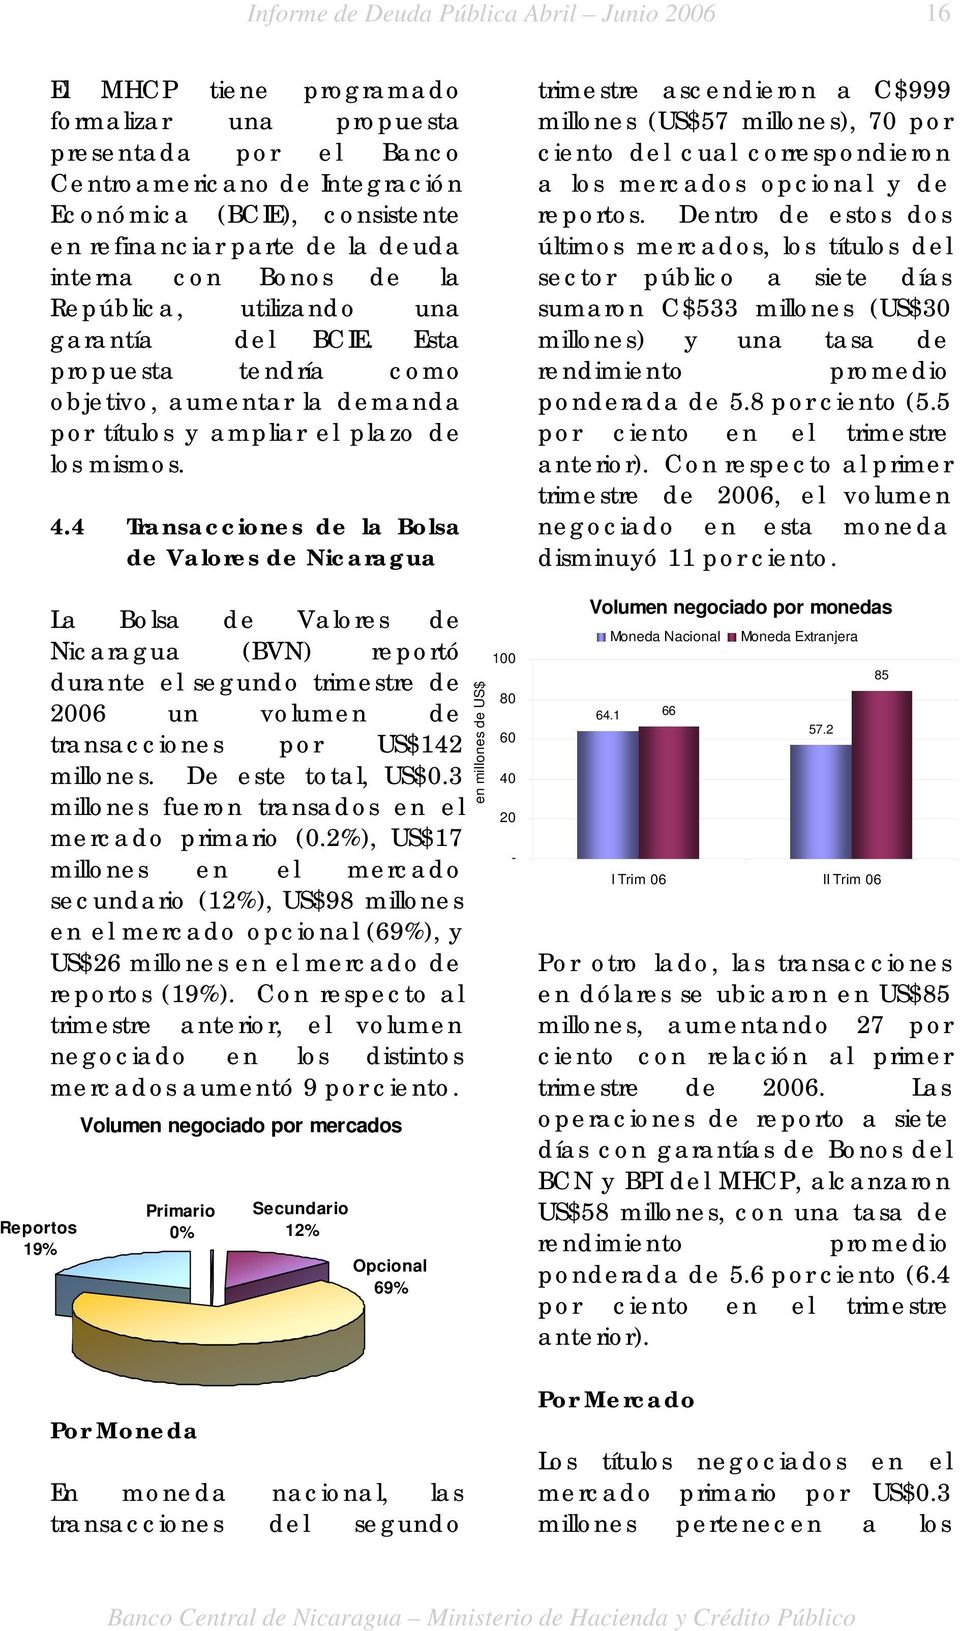 4 Transacciones de la Bolsa de Valores de Nicaragua La Bolsa de Valores de Nicaragua (BVN) reportó durante el segundo trimestre de 2006 un volumen de transacciones por US$142 millones.